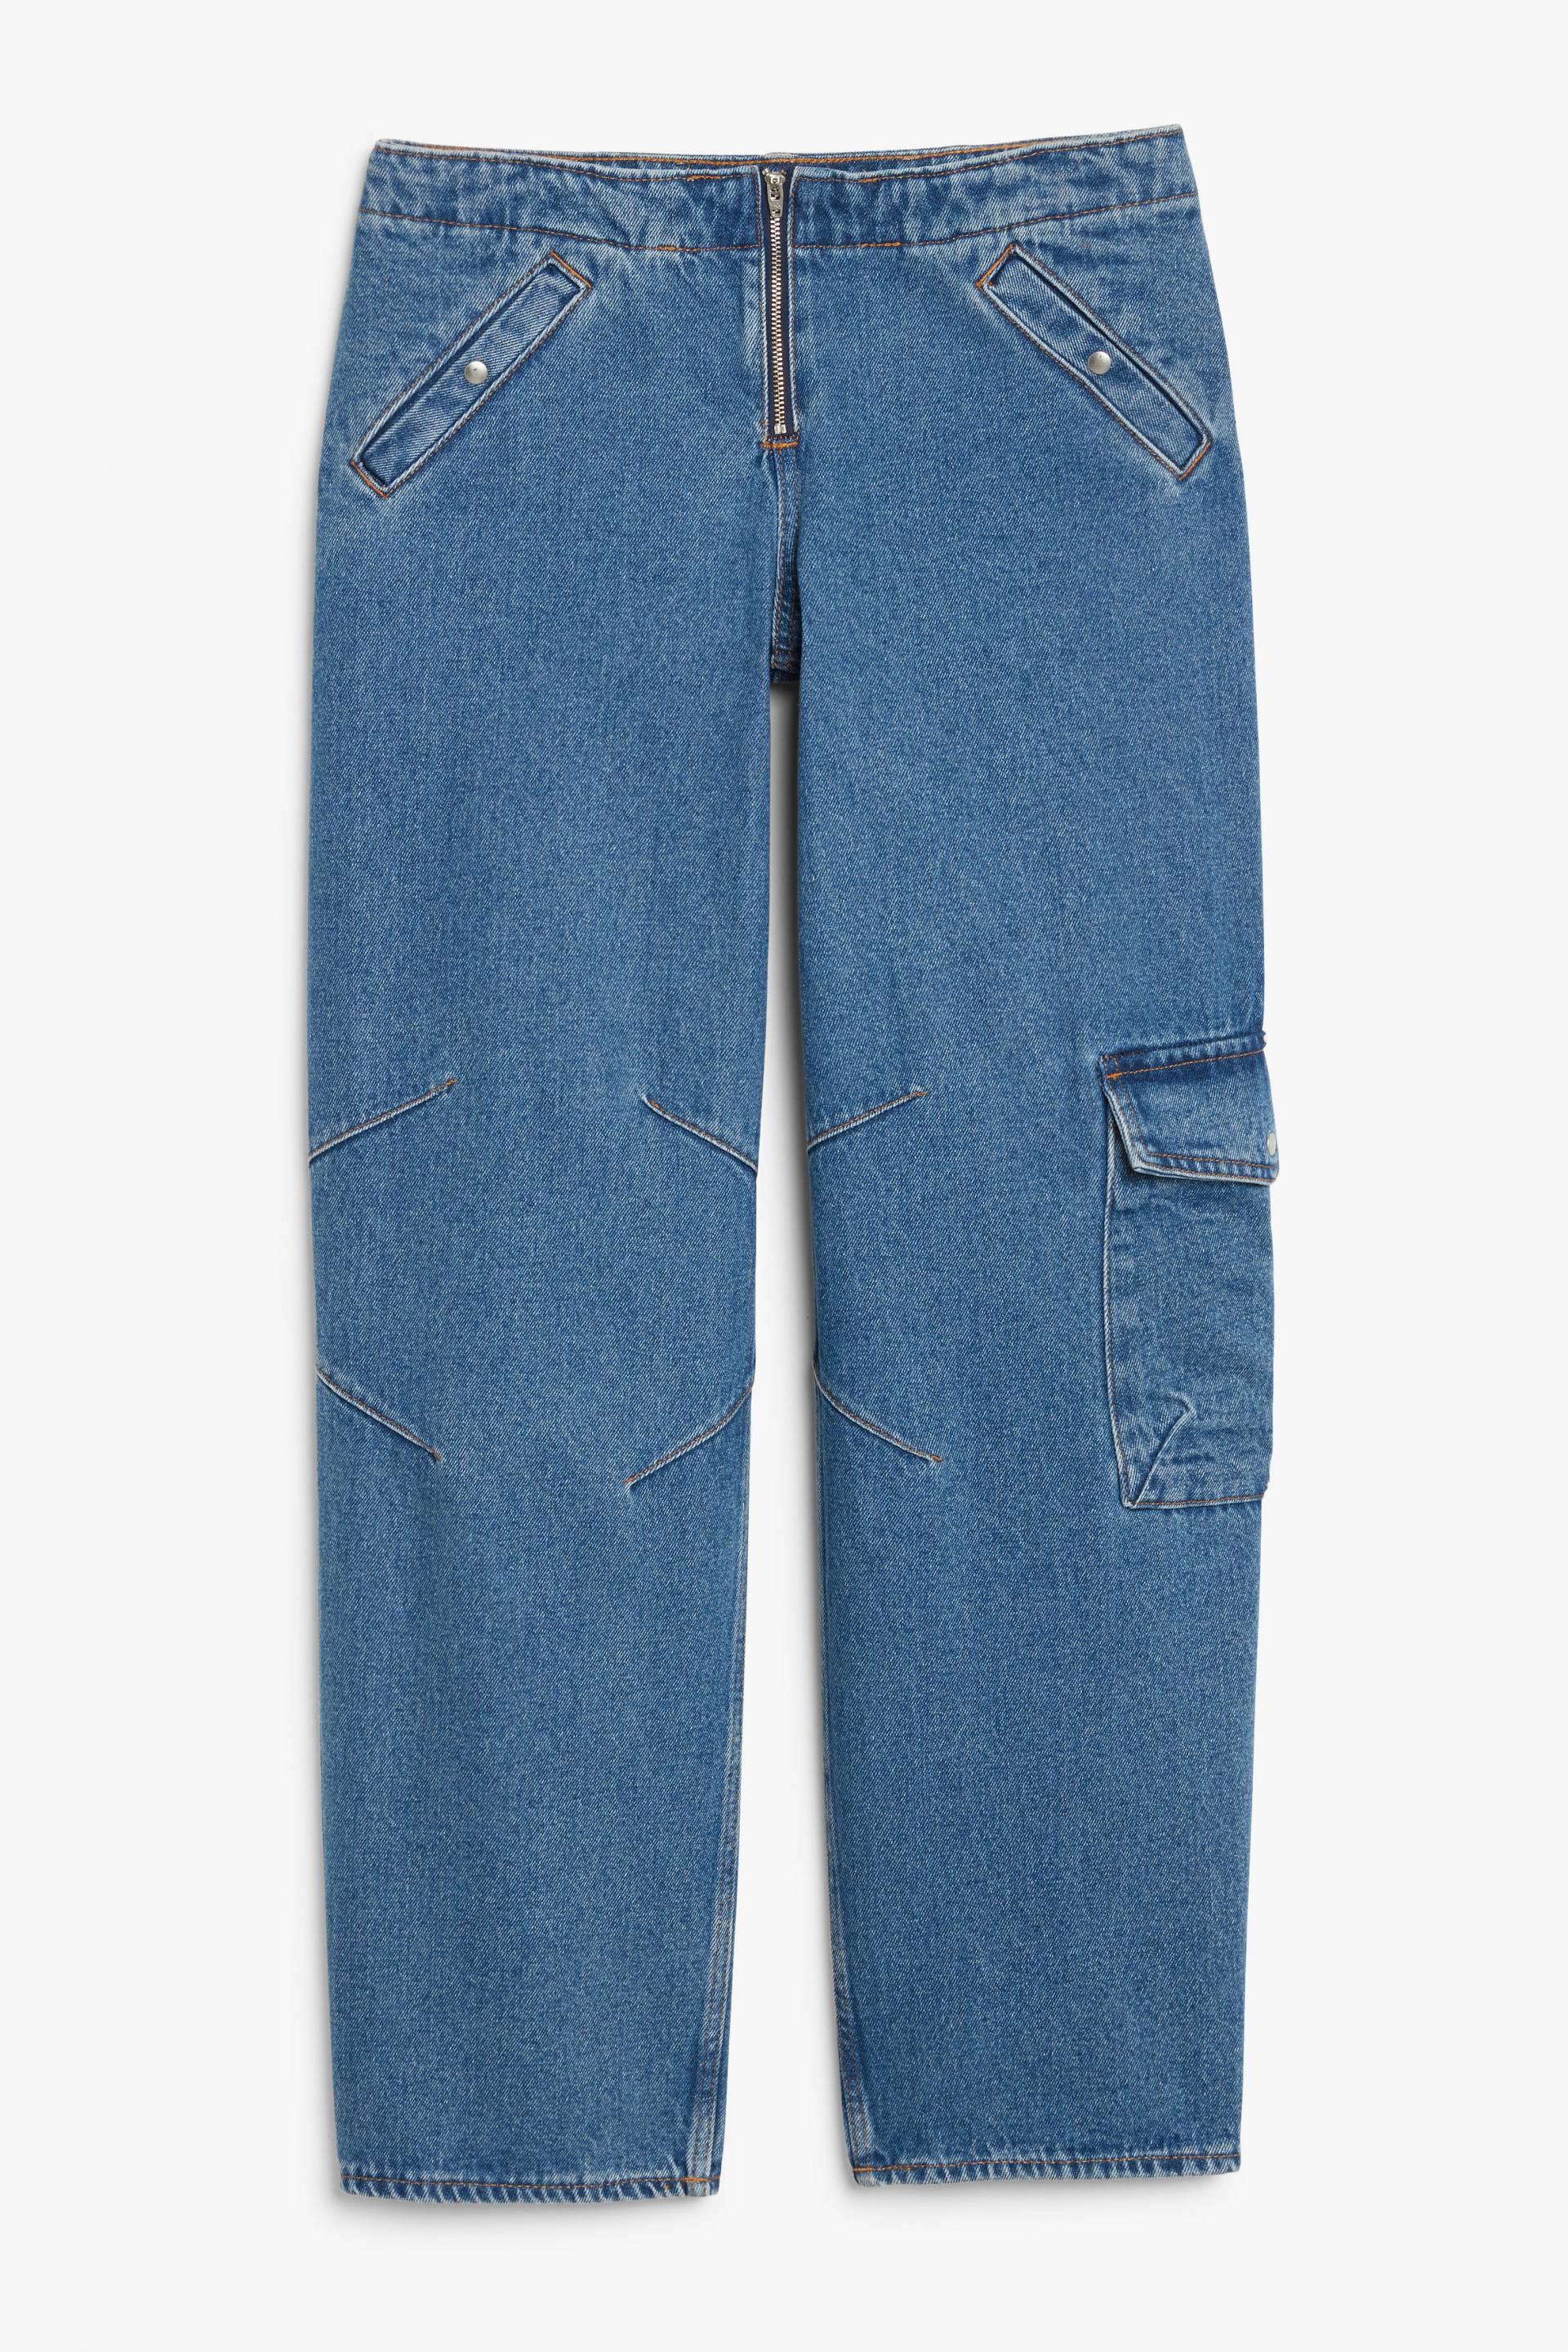 Monki Tief sitzende Cargo-Jeans Blau, Baggy in Größe W 29. Farbe: Blue von Monki